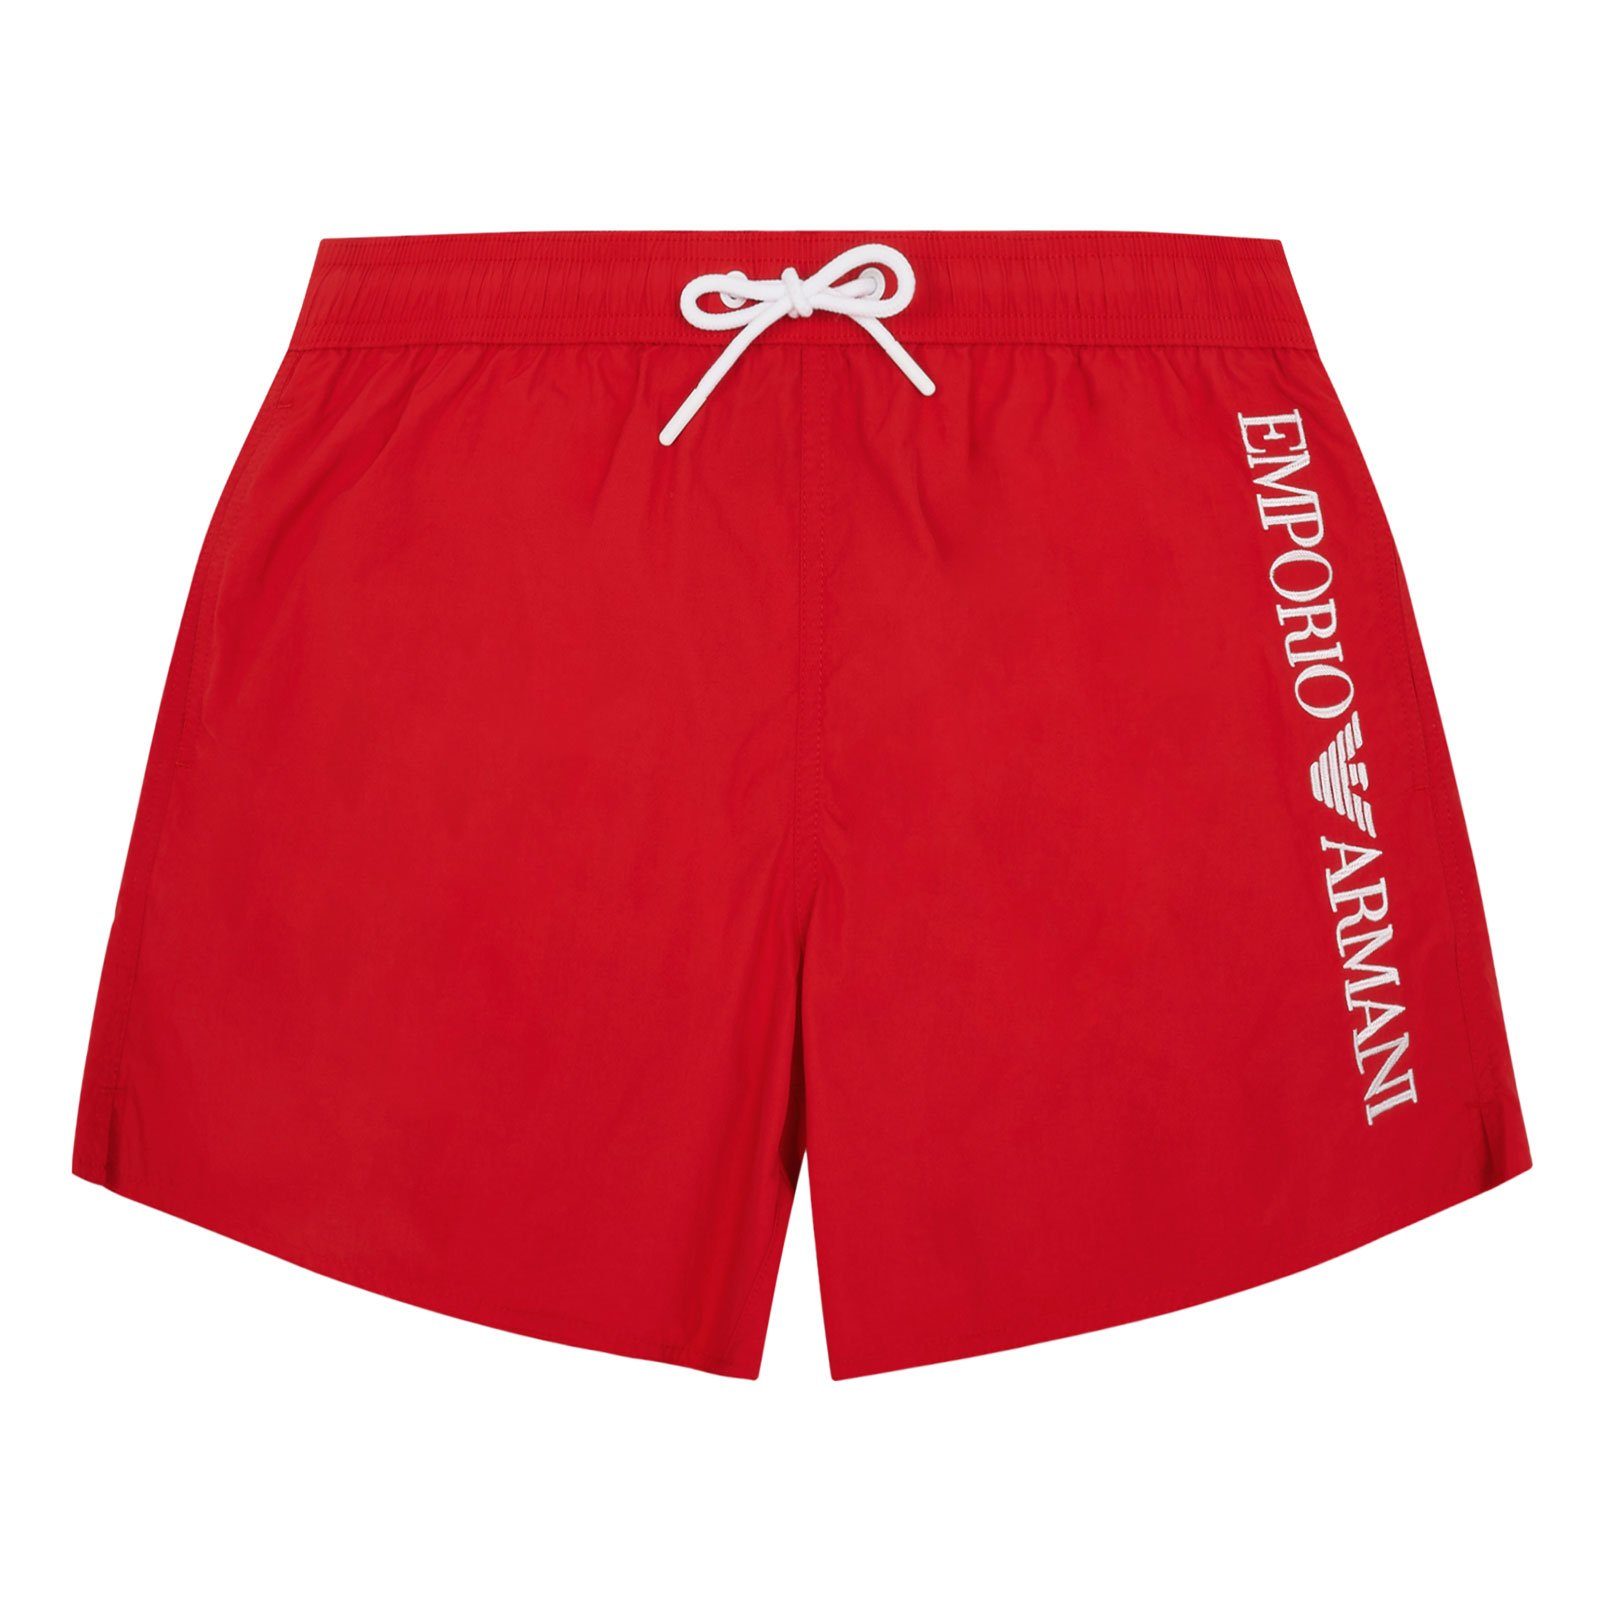 Emporio Armani Boxer-Badehose Mid Boxer Beachwear mit vertikalem Markenschriftzug 00173 ruby red